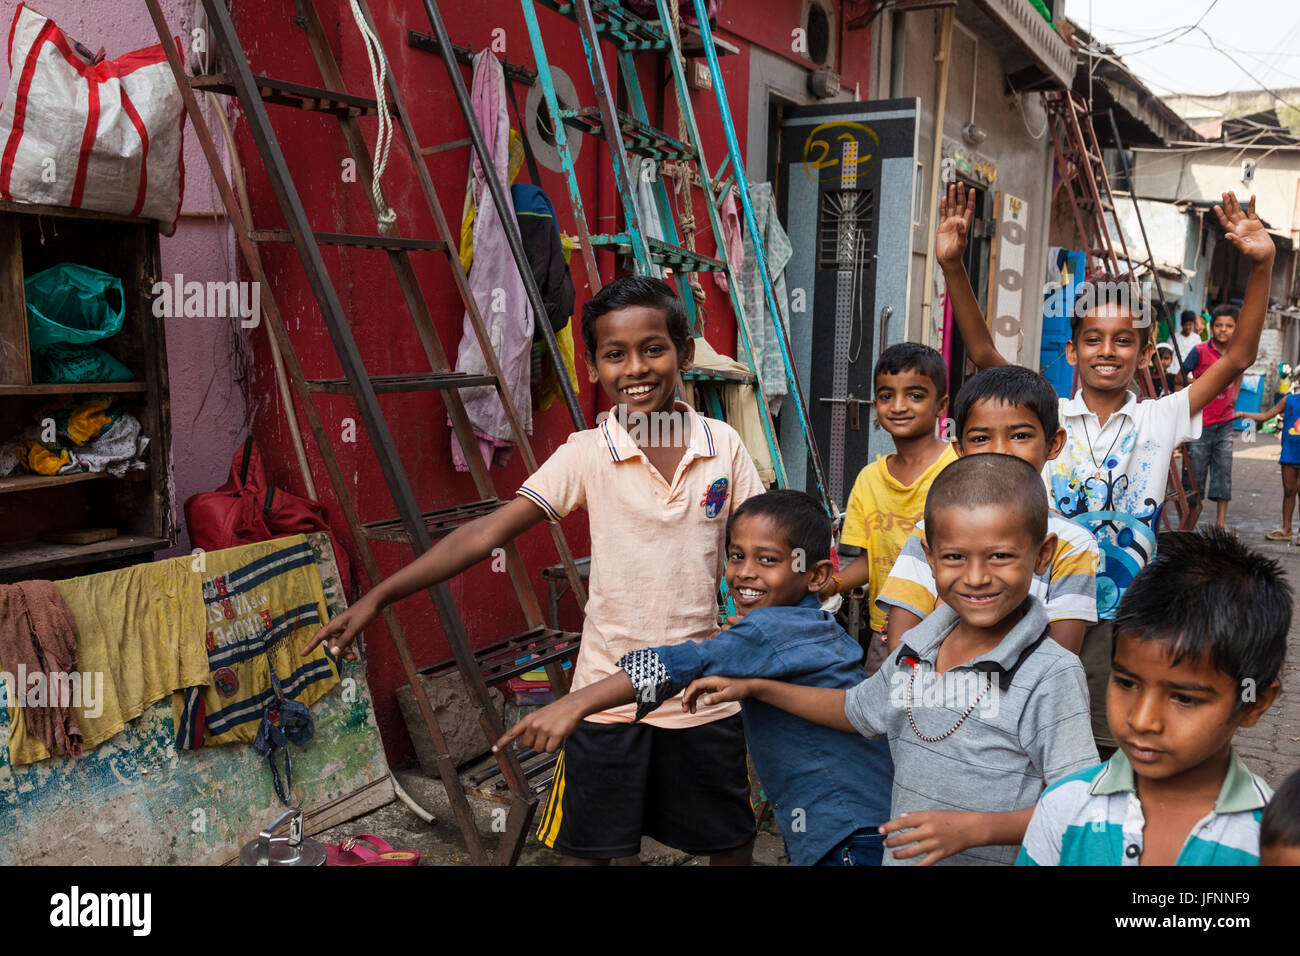 Children in south Mumbai, India Stock Photo